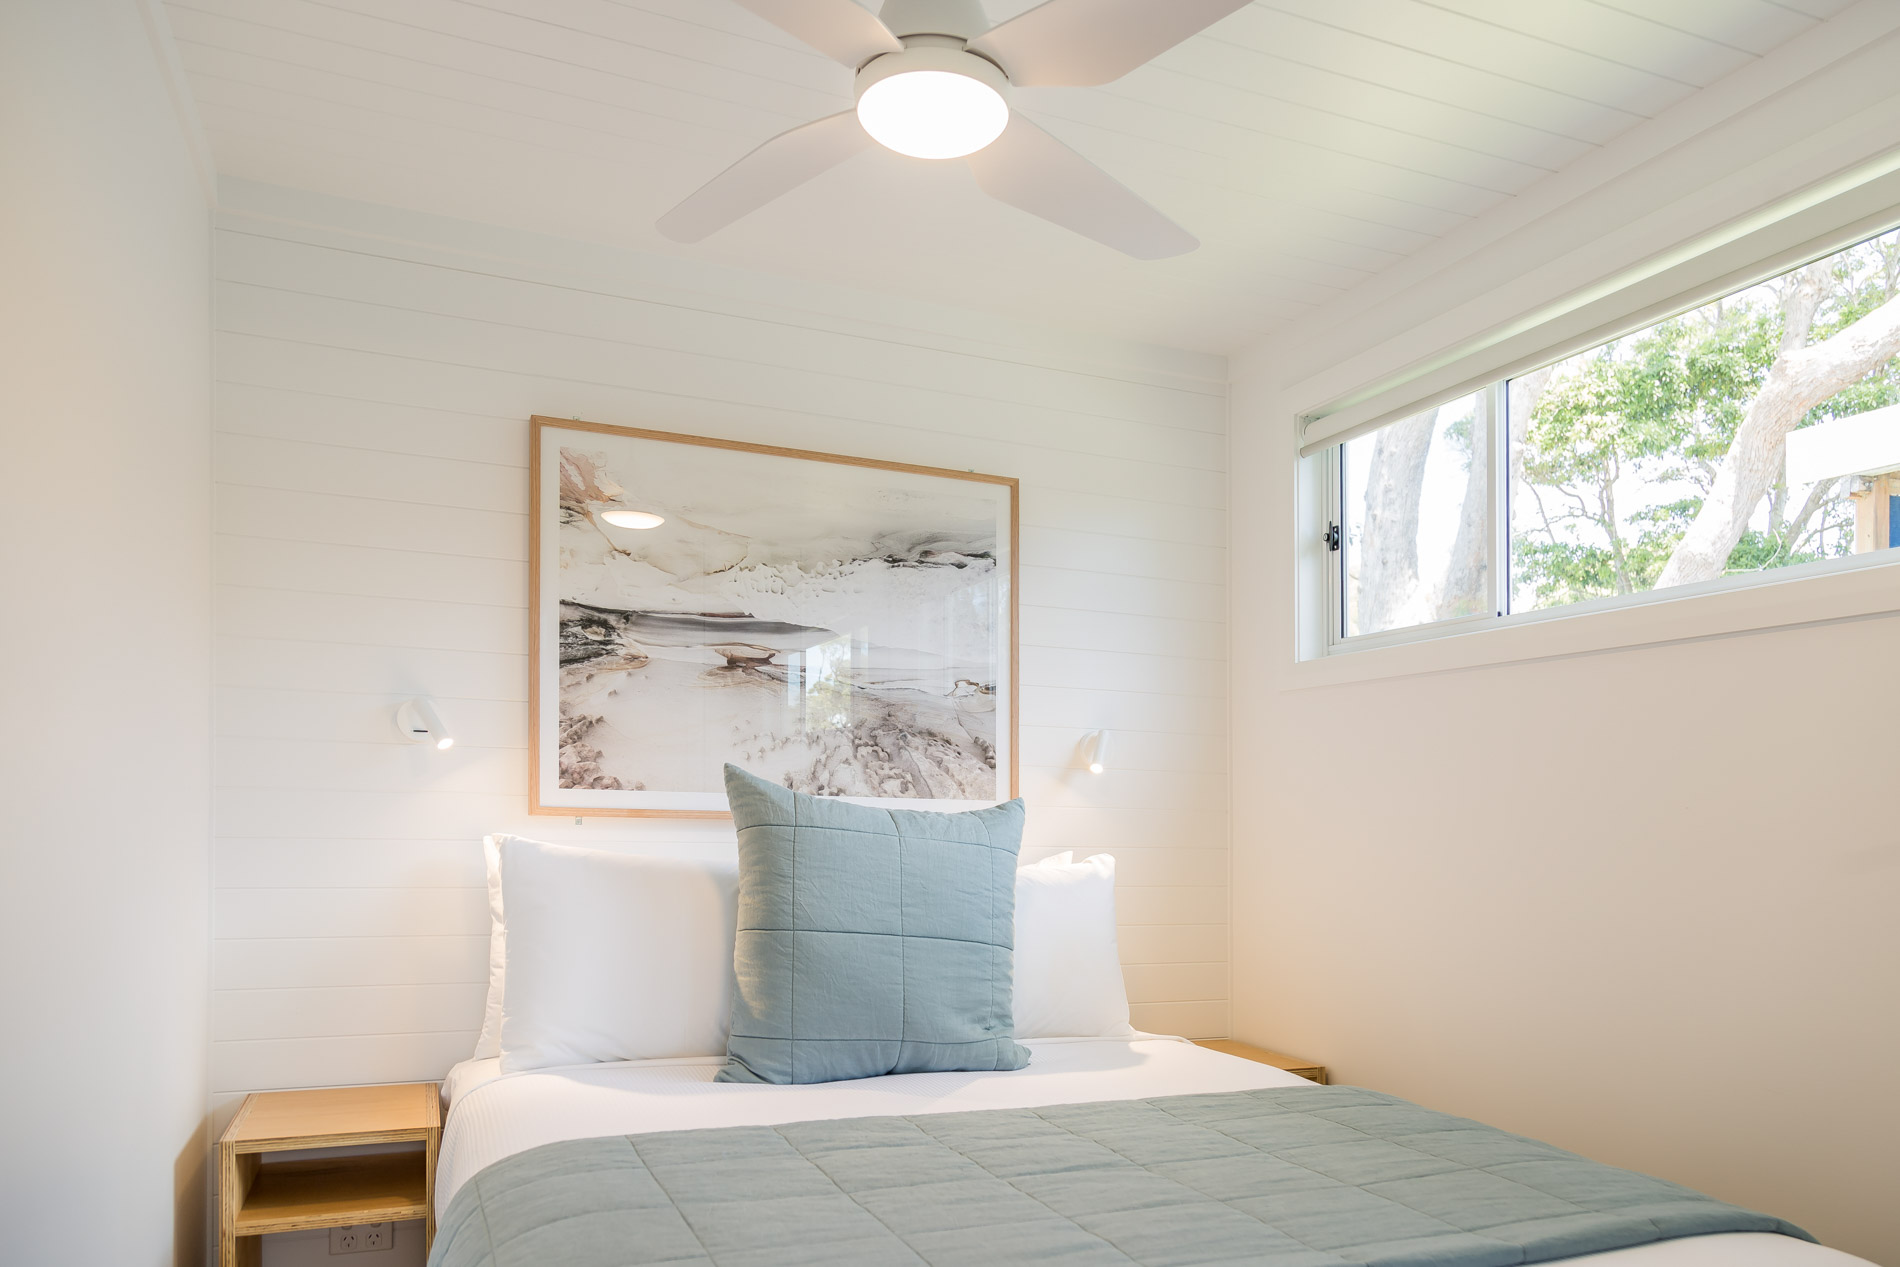 Surfside Cabin bedroom interior